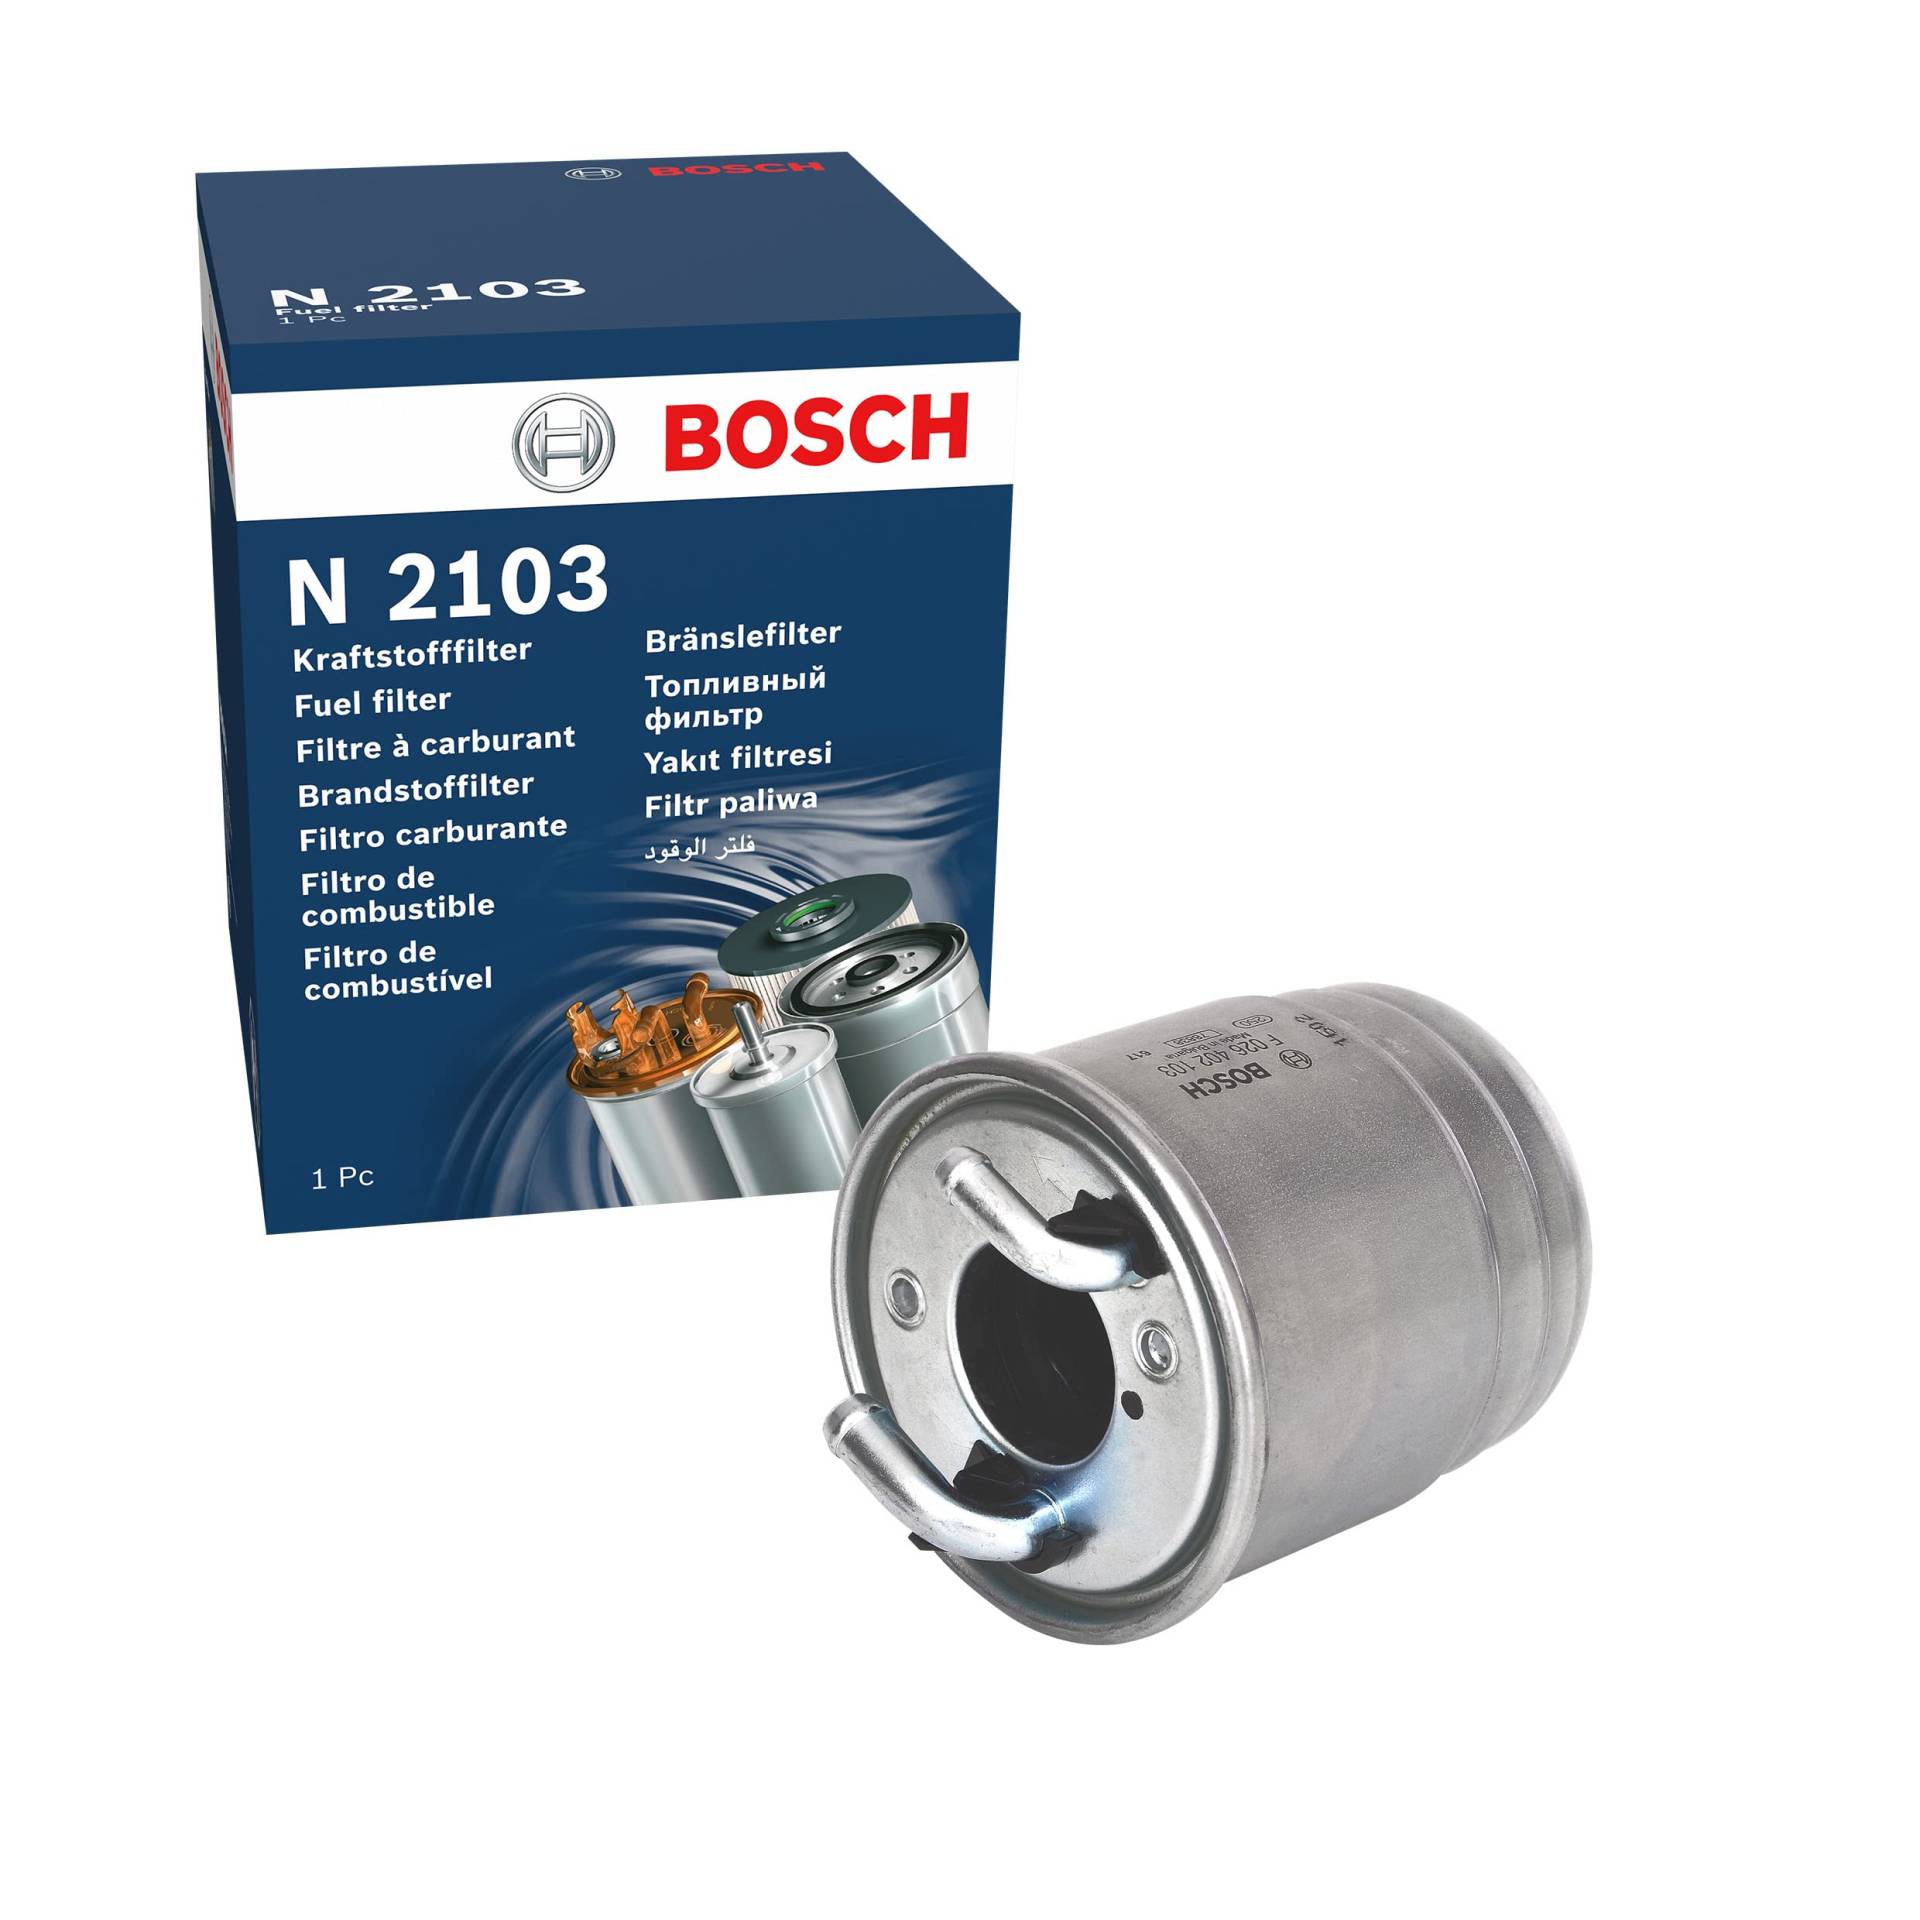 Bosch N2103 - Dieselfilter Auto von Bosch Automotive